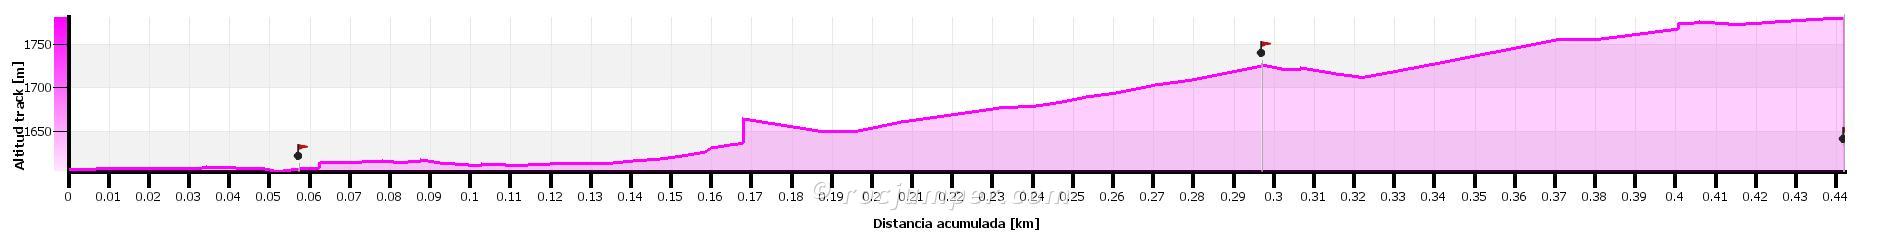 Altimetría - Vía Ferrata Canal de la Mora - Canillo - Andorra - RocJumper